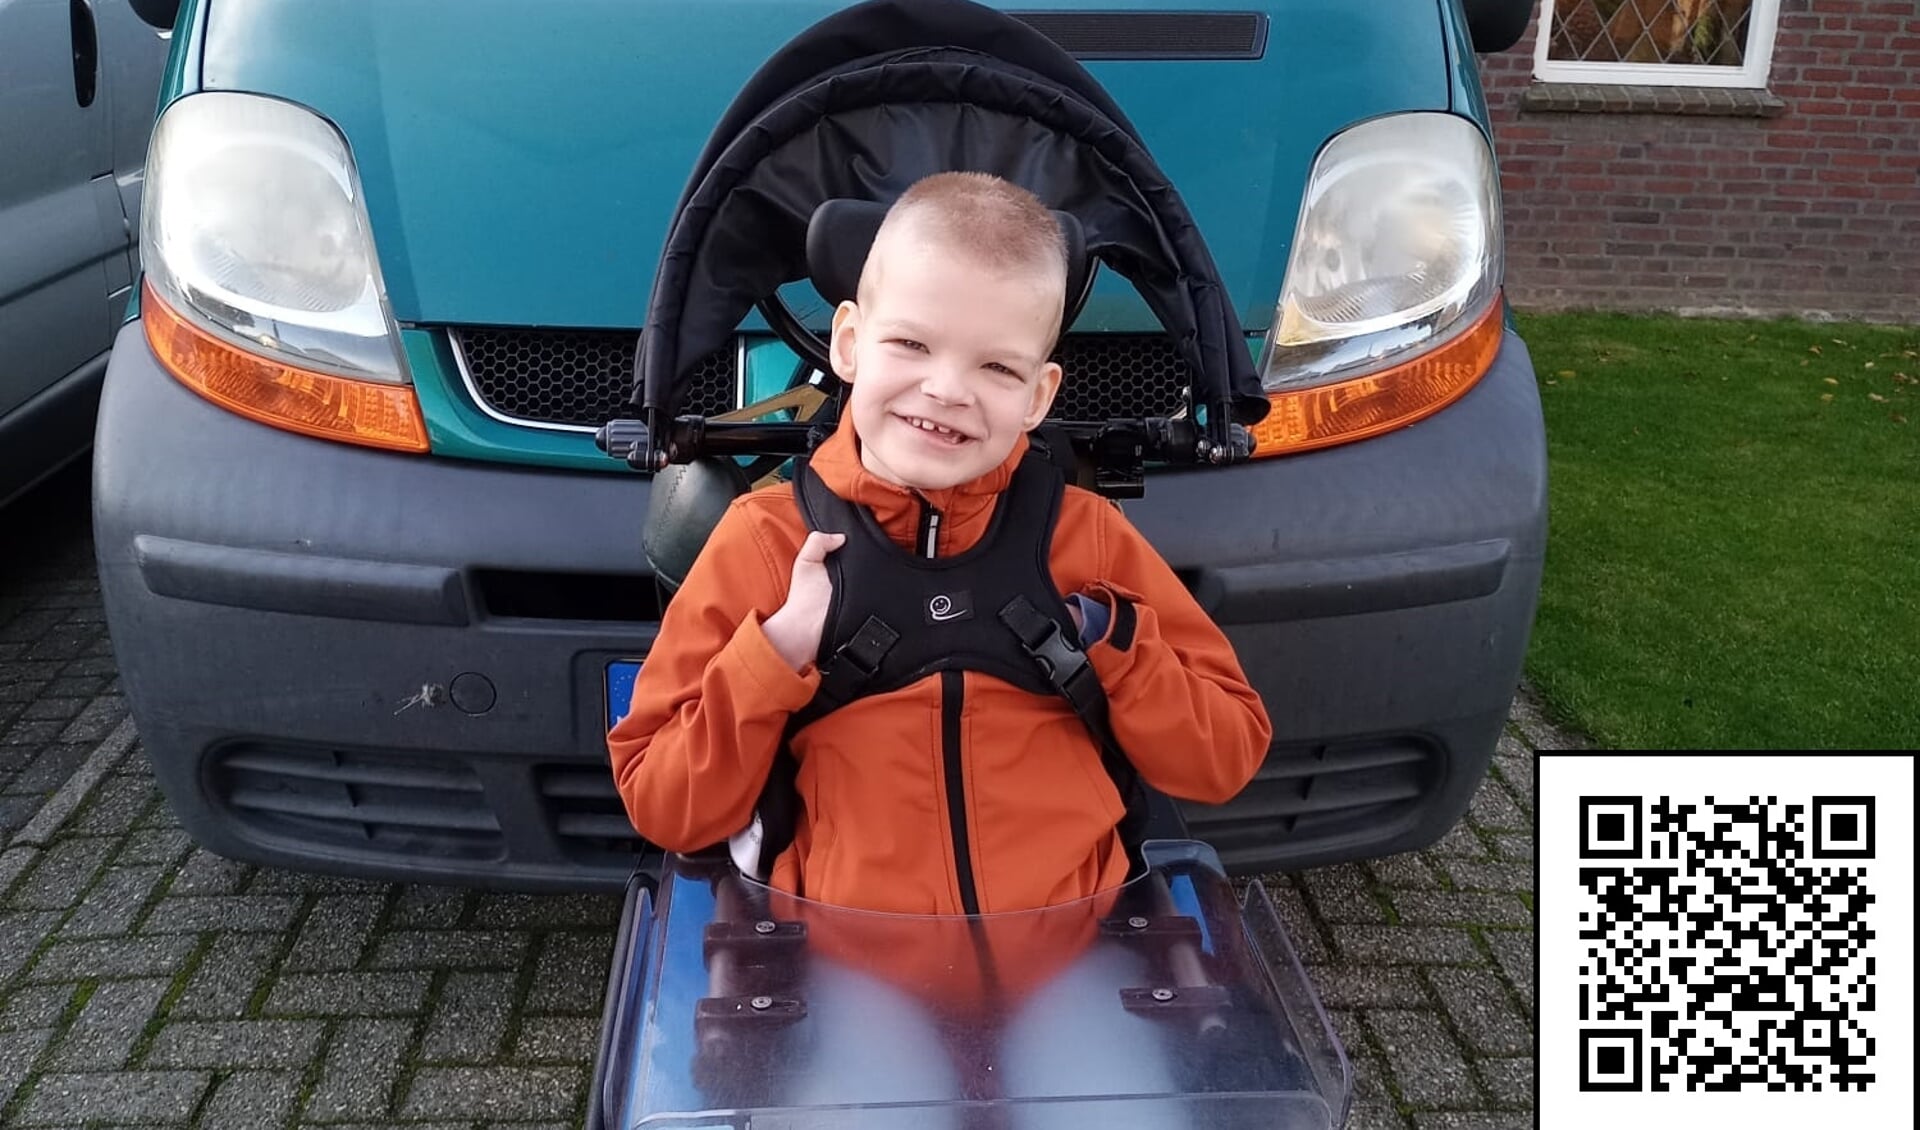 Tom heeft een nieuwe rolstoelbus nodig. Wil jij hem helpen? Ga naar https://www.doneeractie.nl/een-rolstoelbus-voor-tom/-68413 of scan de QR-code!